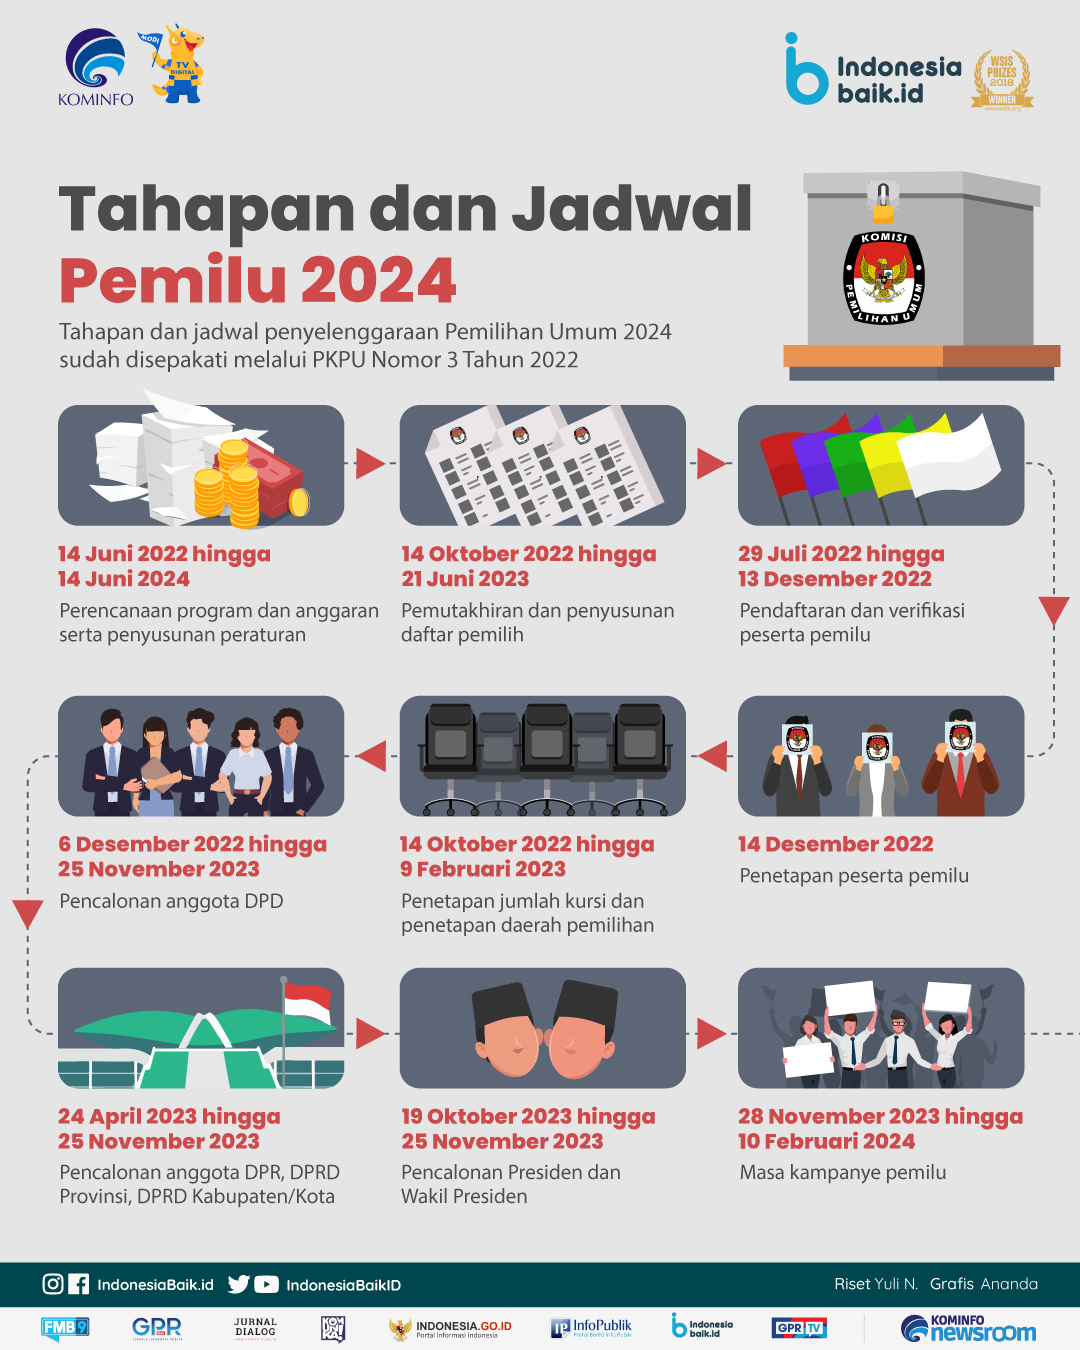 tahapan dan jadwal pemilu indonesia tahun 2024